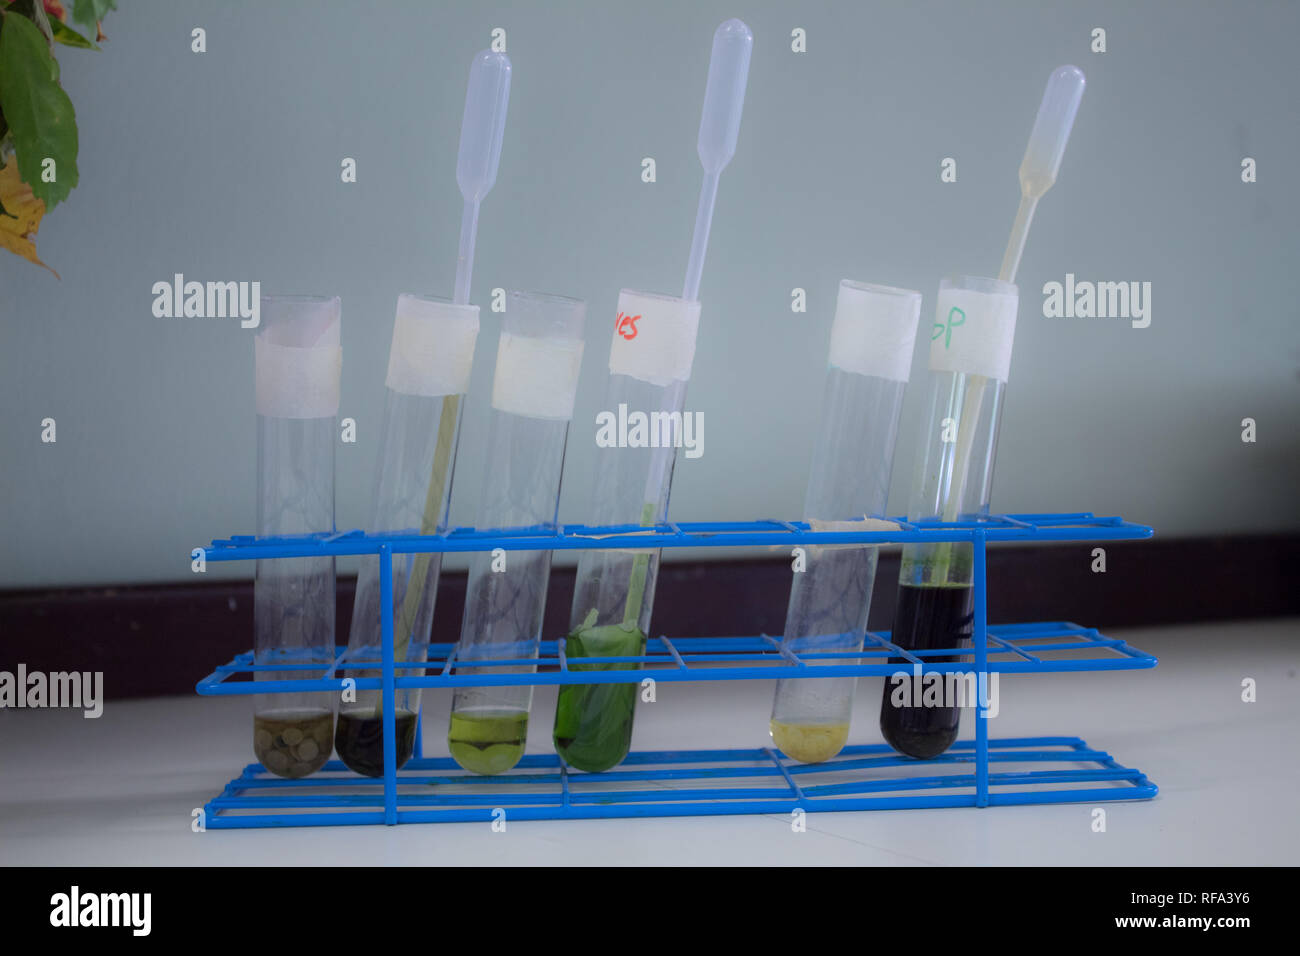 Ein Foto von mehreren bunten biologische Proben (in flüssiger Form) an einer Wissenschaft Klasse in einem International Baccalaureate School Stockfoto